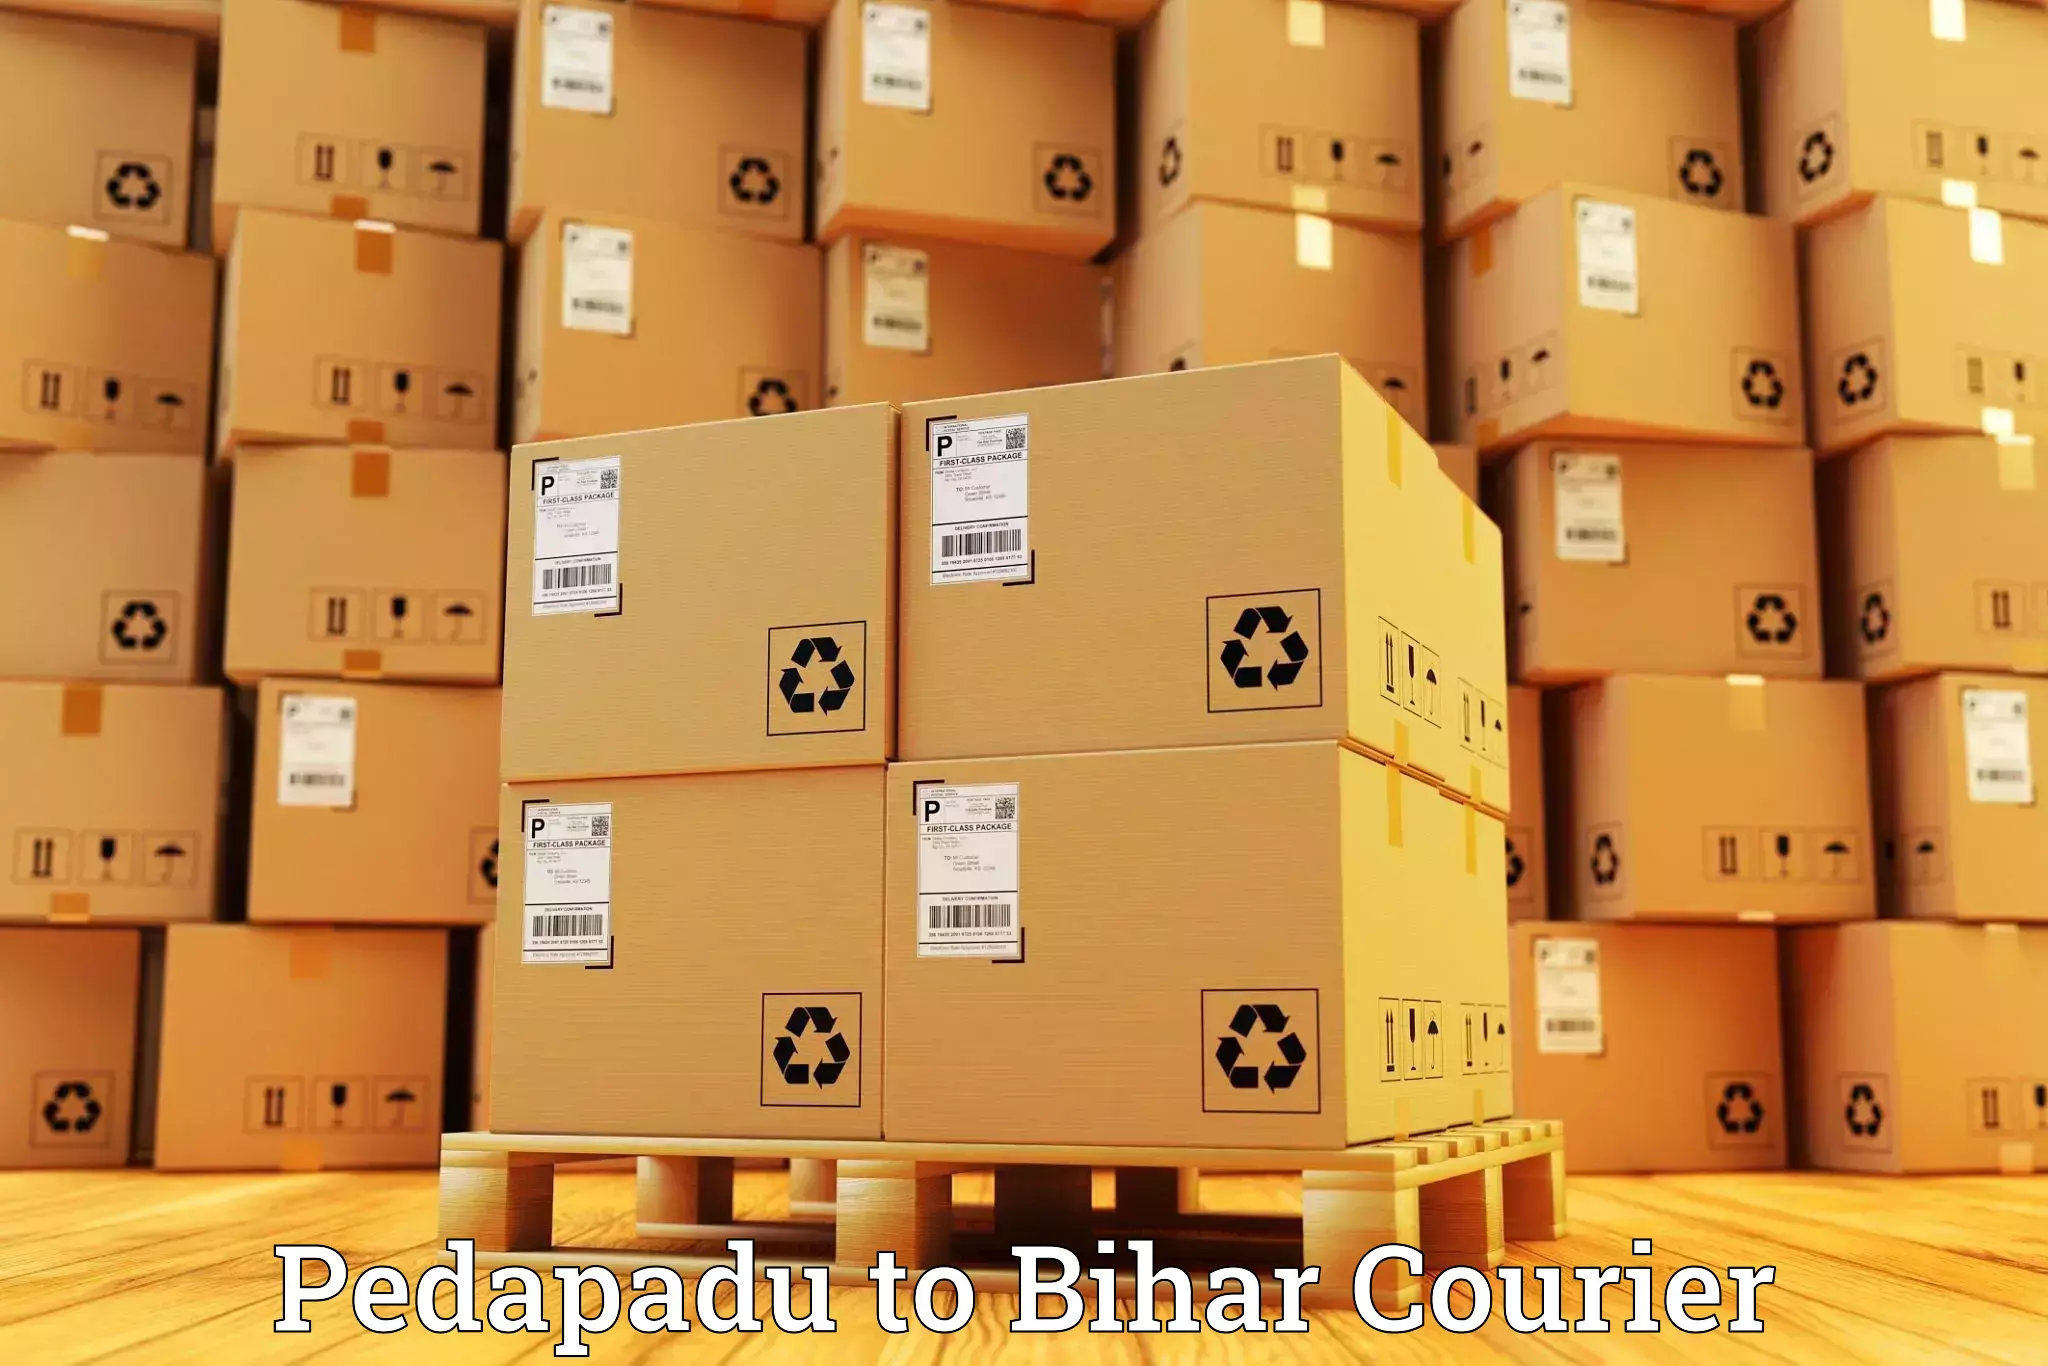 Multi-service courier options Pedapadu to Bihar